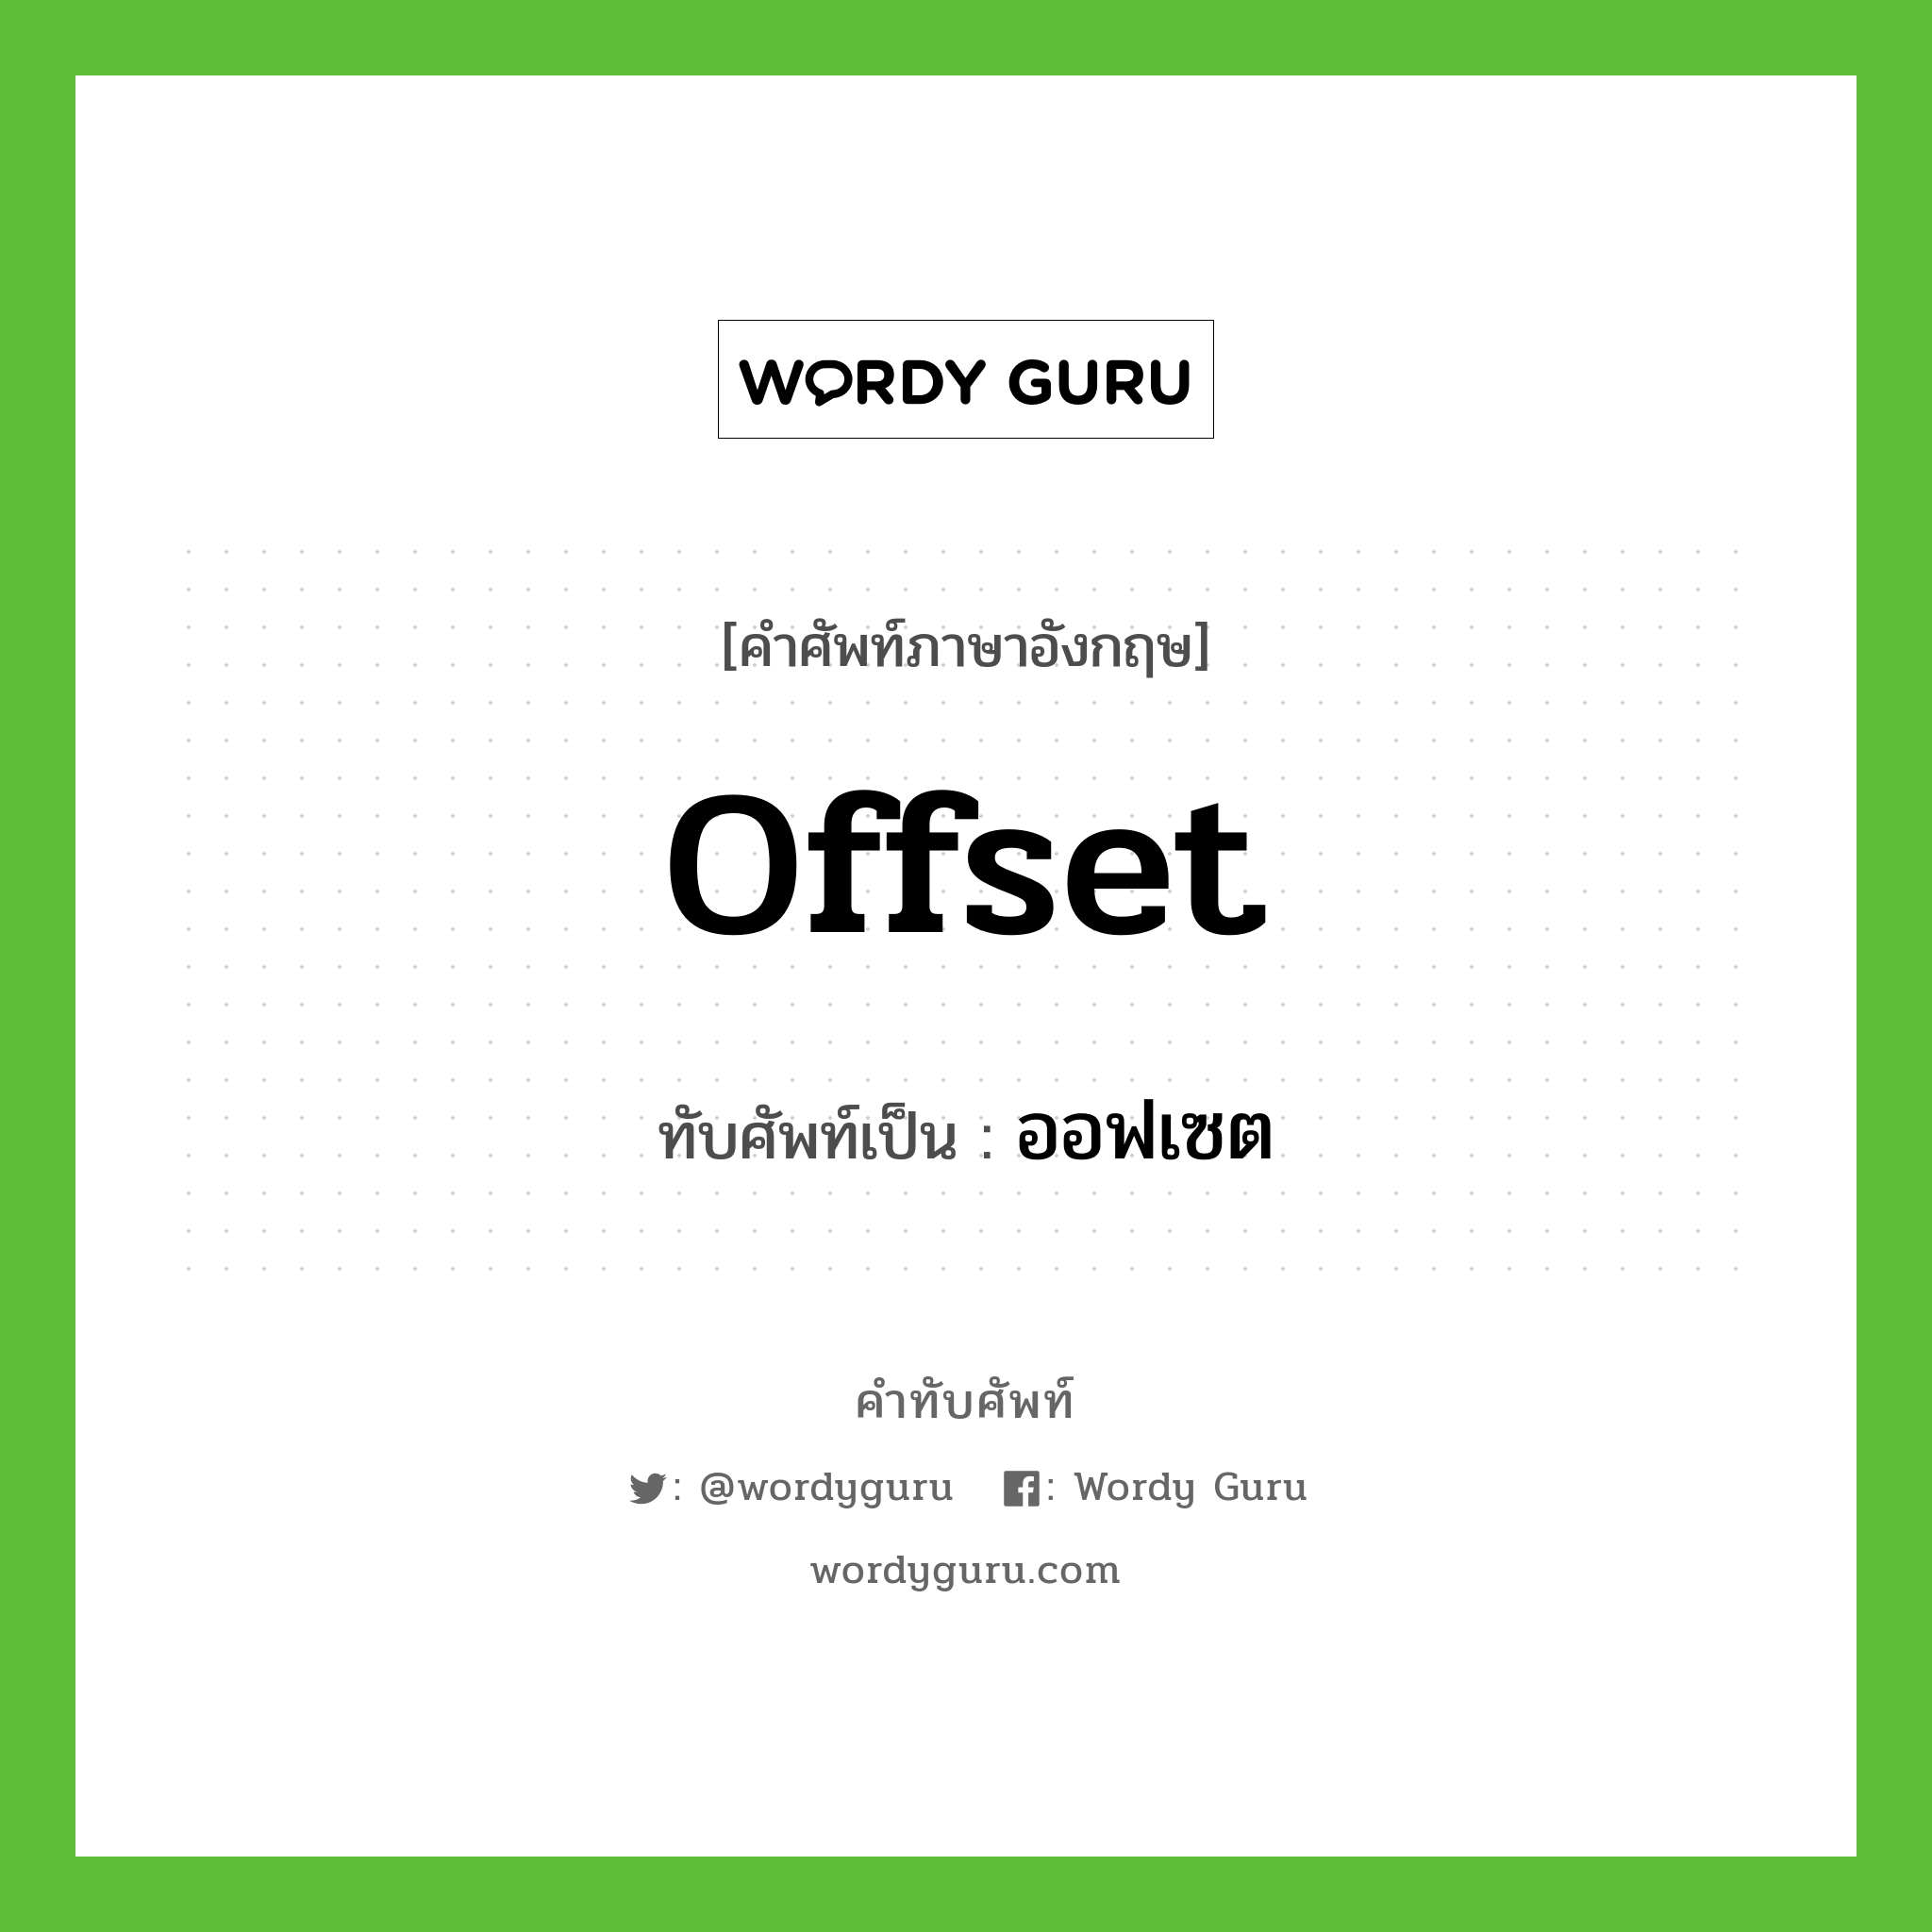 offset เขียนเป็นคำไทยว่าอะไร?, คำศัพท์ภาษาอังกฤษ offset ทับศัพท์เป็น ออฟเซต